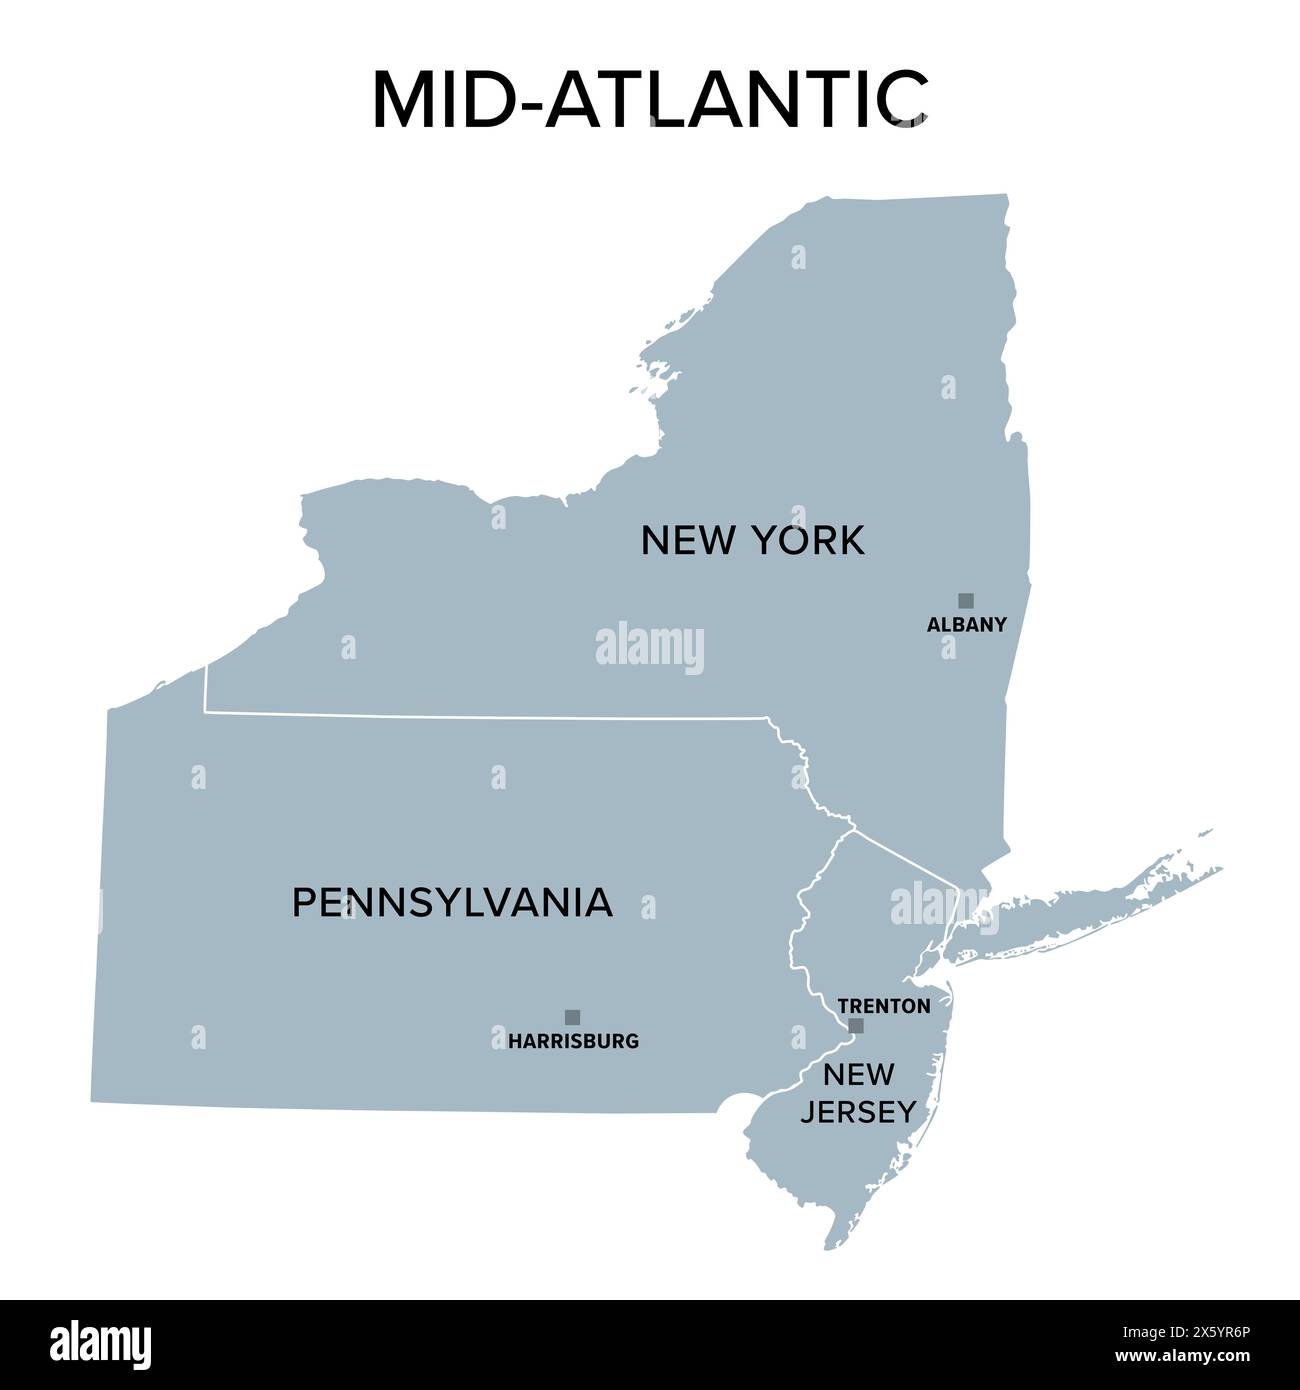 Mittelatlantische oder mittelatlantische staaten, graue politische Karte mit Hauptstädten. United States Census Division of the Northeast Region. Stockfoto